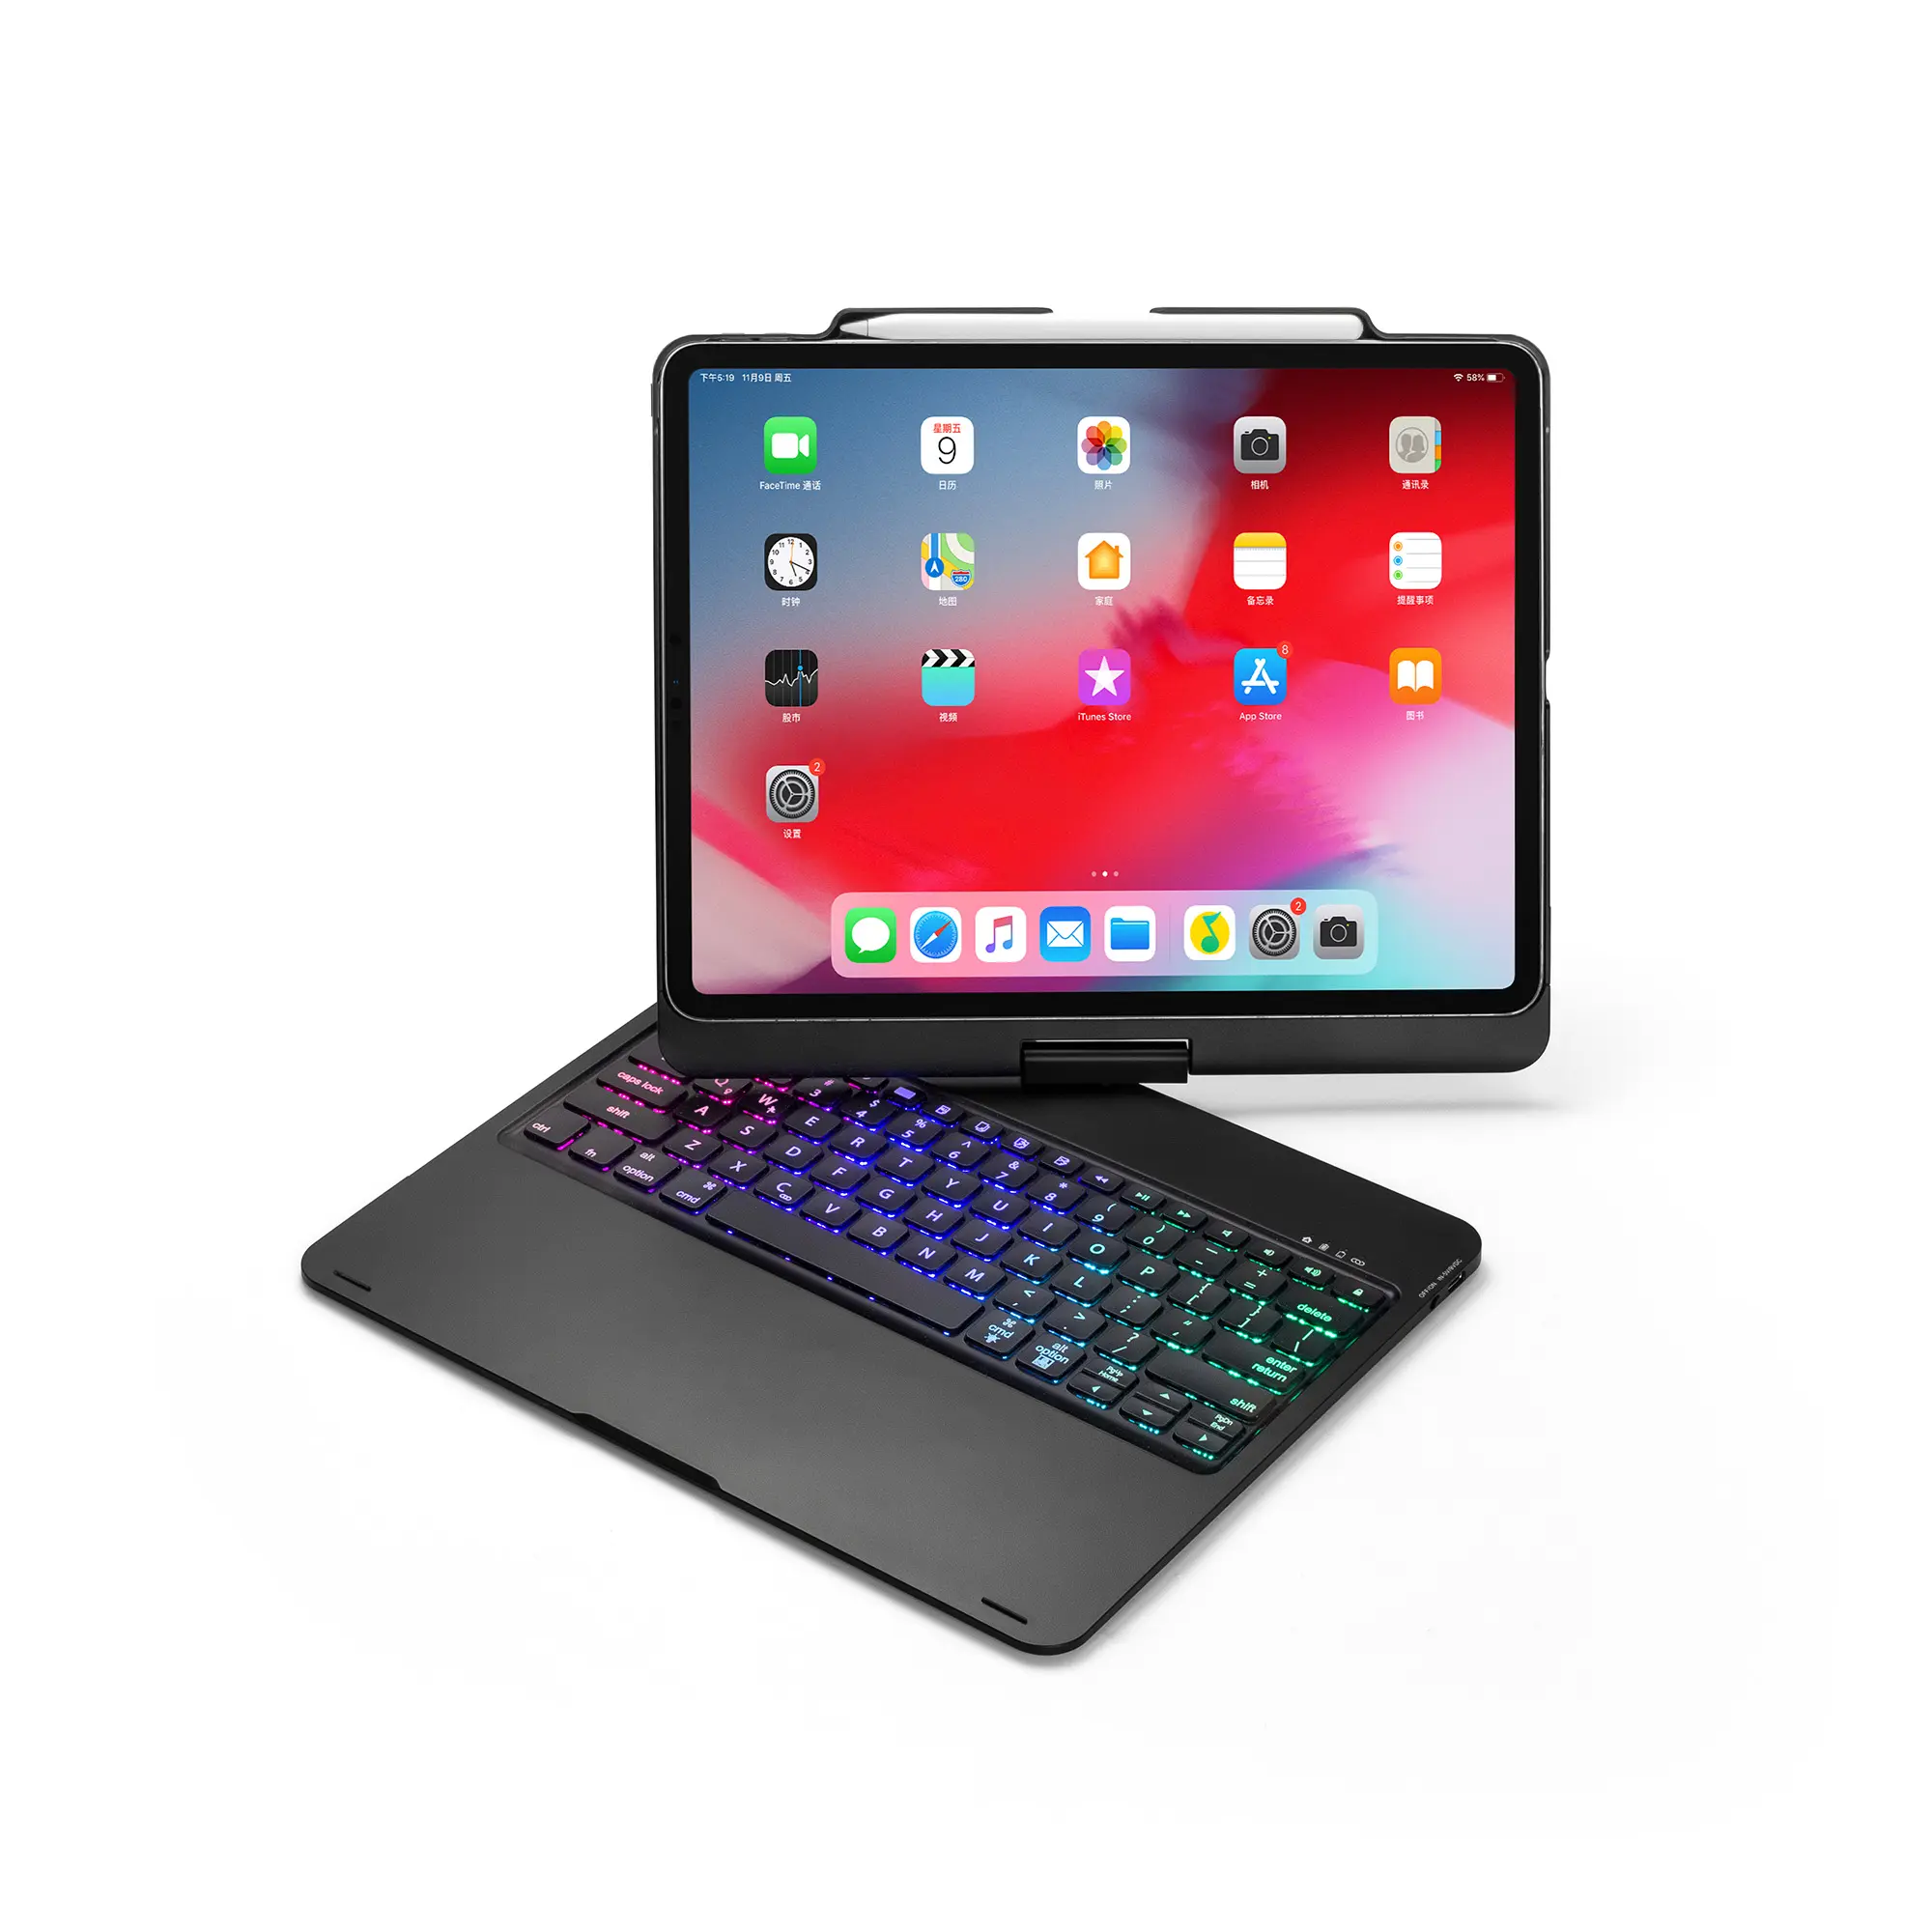 Casing Keyboard Berputar 360 Derajat, Casing PC Keras ABS 2019 Derajat dengan Keyboard untuk Ipad Pro, Casing Tablet